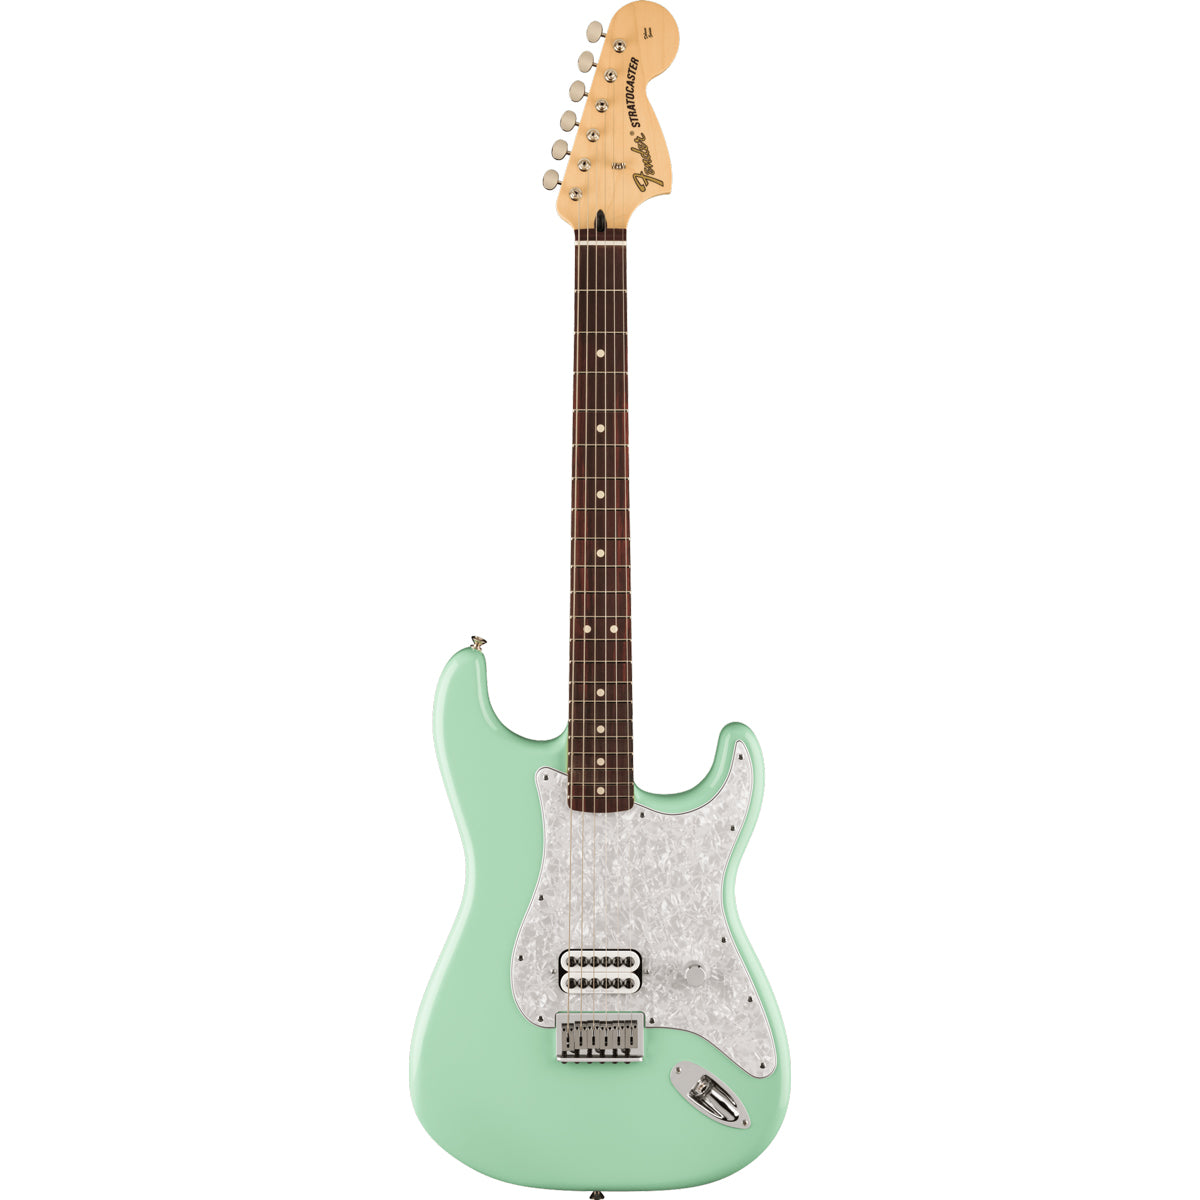 Fender Limited Edition Tom Delonge Stratocaster Rosewood Fingerboard Surf Green